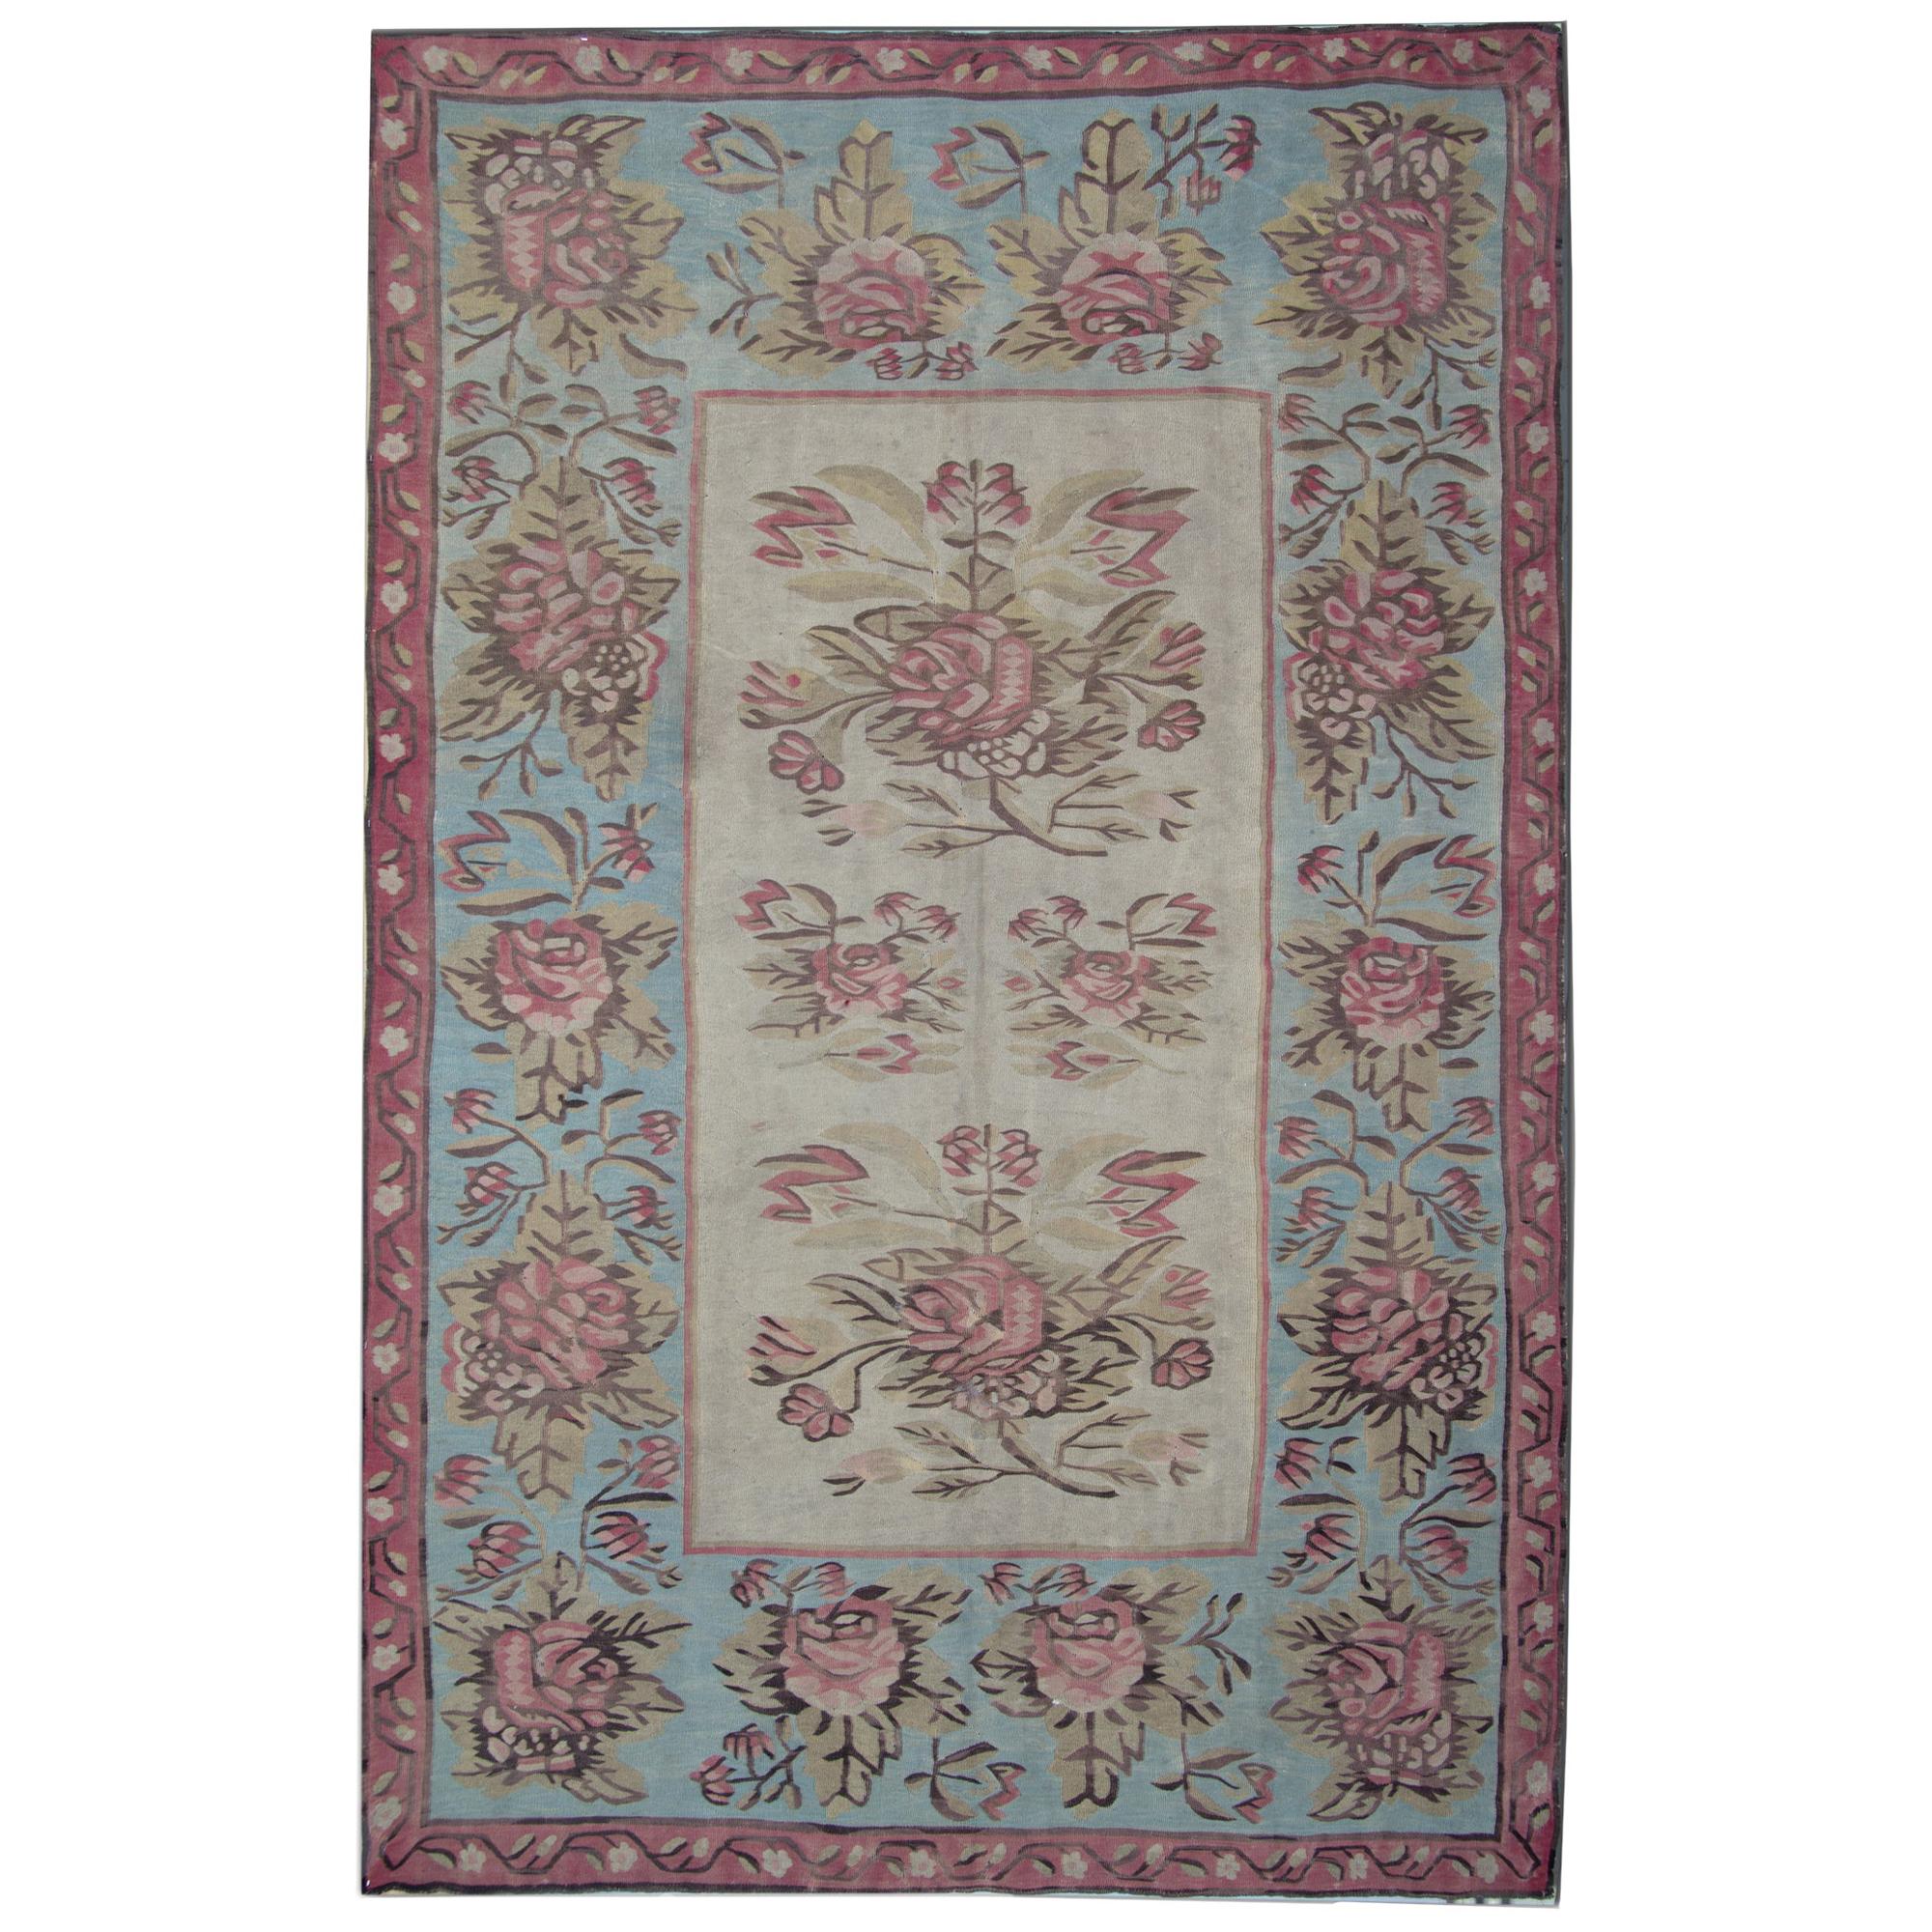 Antike Teppiche, seltene Kelim-Teppiche aus Bessarabia, Aubusson-Teppich, himmelblauer Teppich